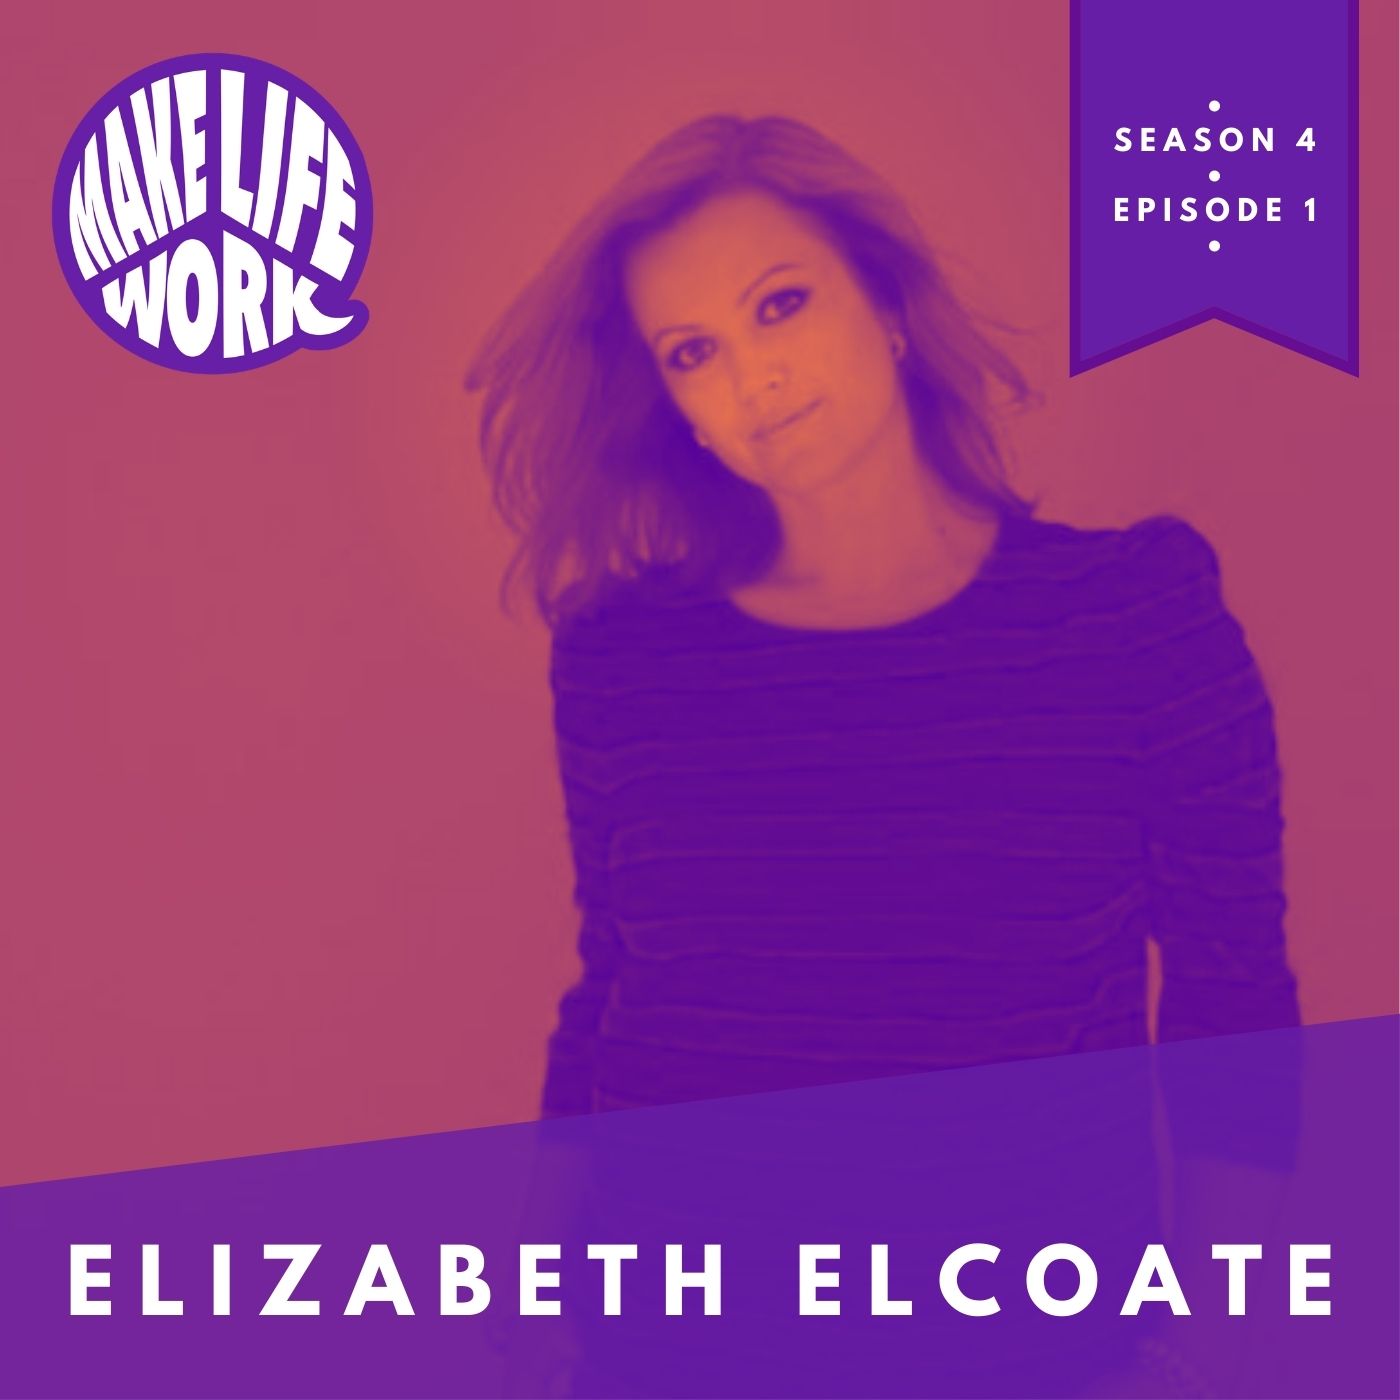 Make Life Work with Elizabeth Elcoate